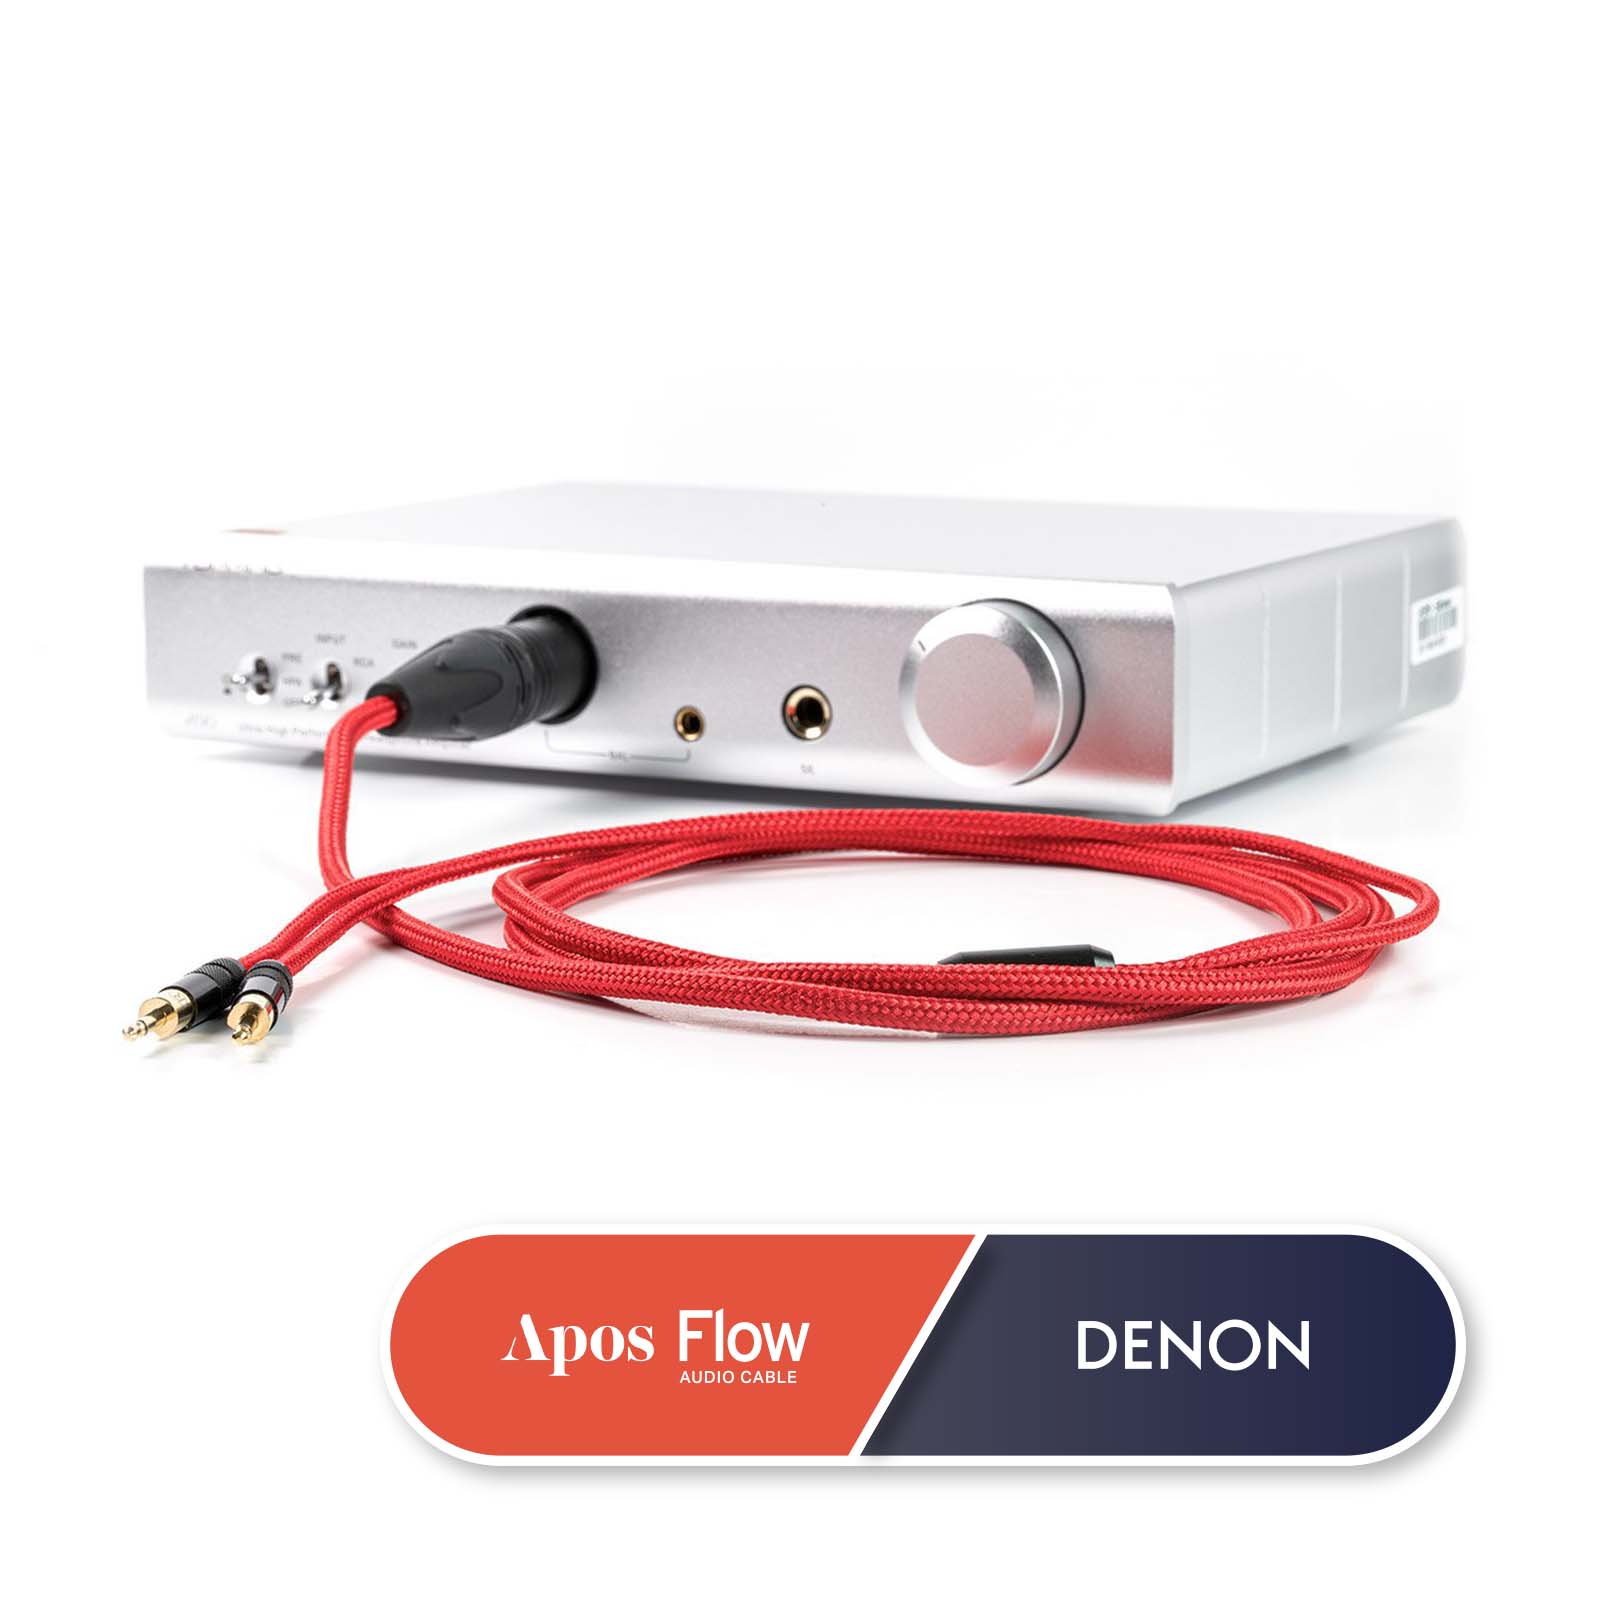 Apos Flow Headphone Cable for [Denon] AH-D5200 / AH-D7200 / AH-D9200